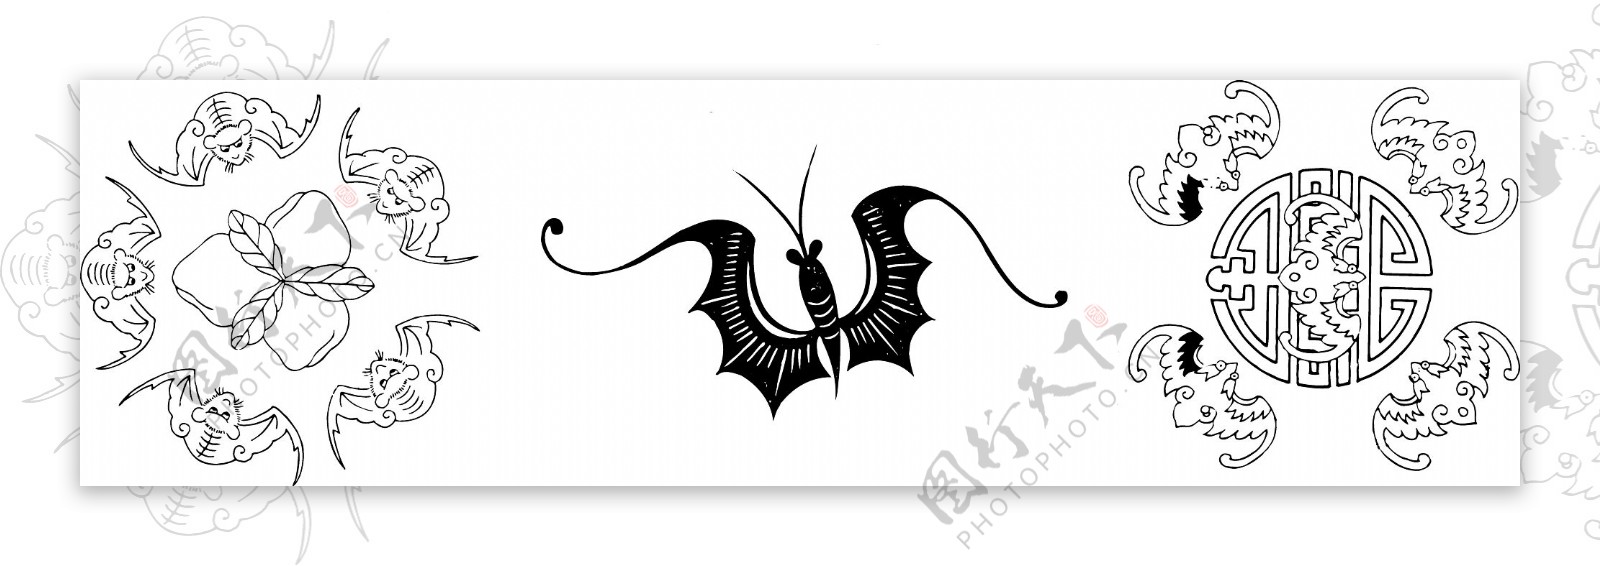 福寿蝙蝠纹样图片